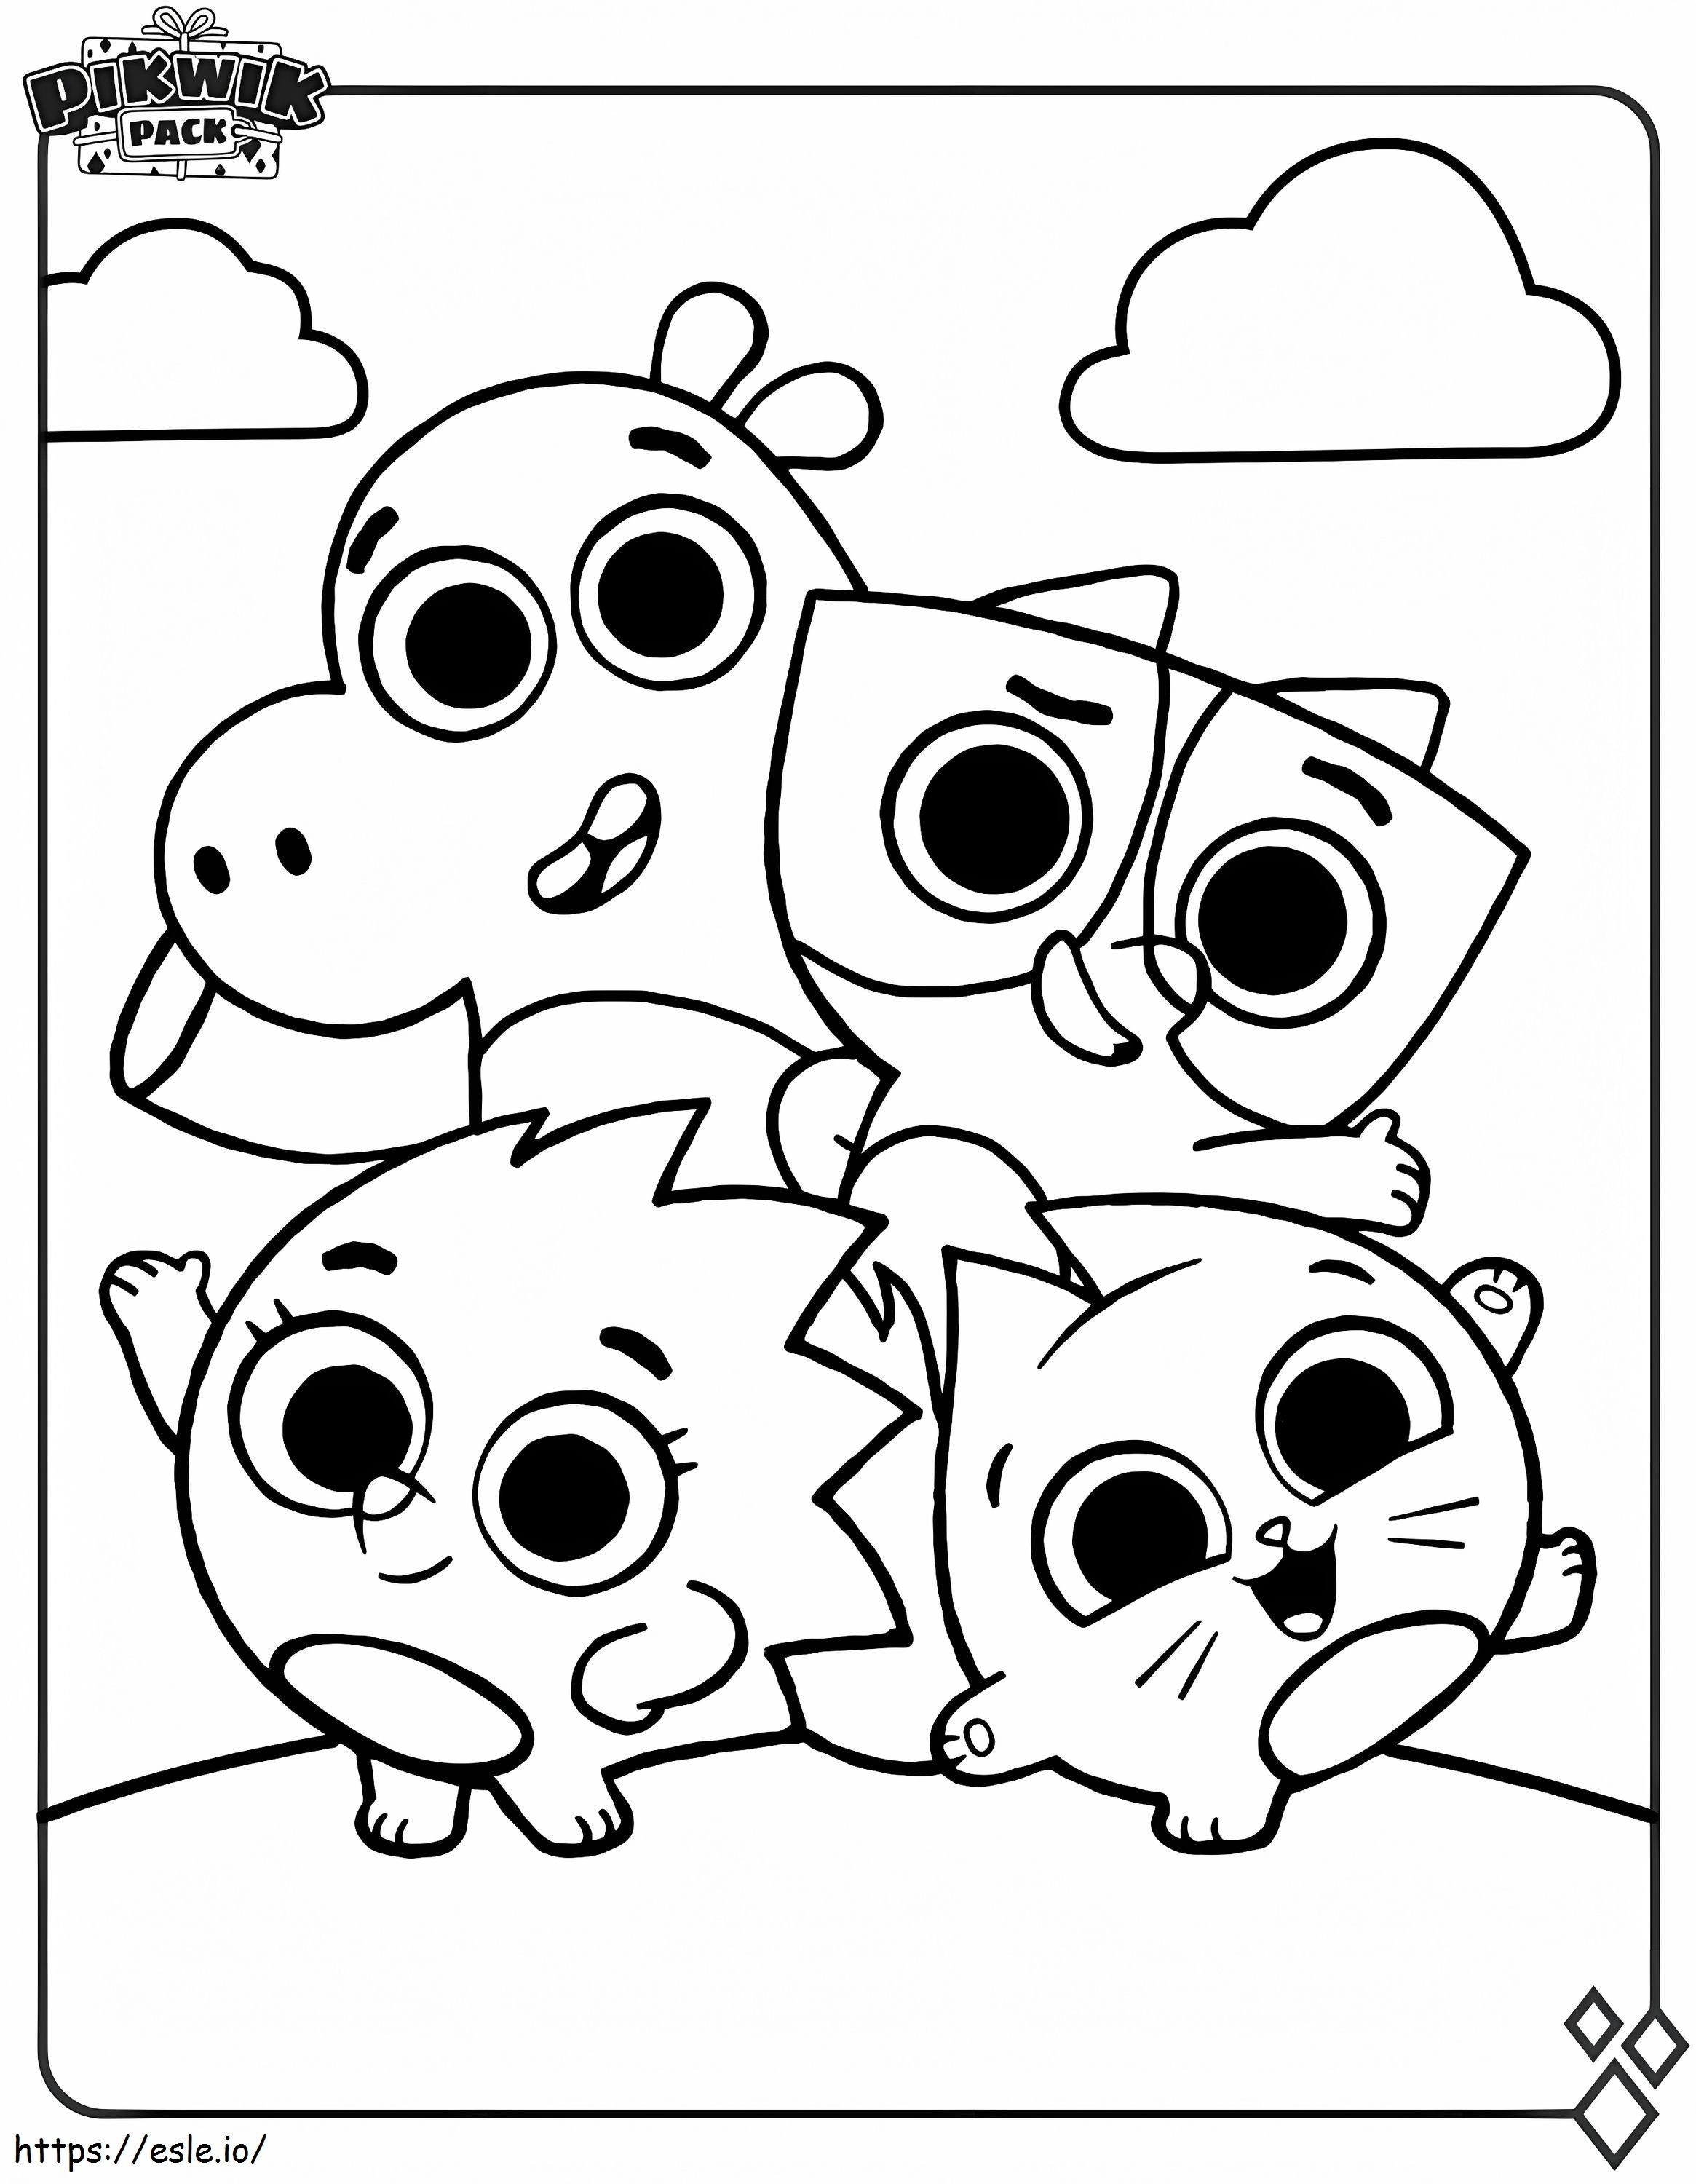 Coloriage Personnages du pack Pikwik à imprimer dessin